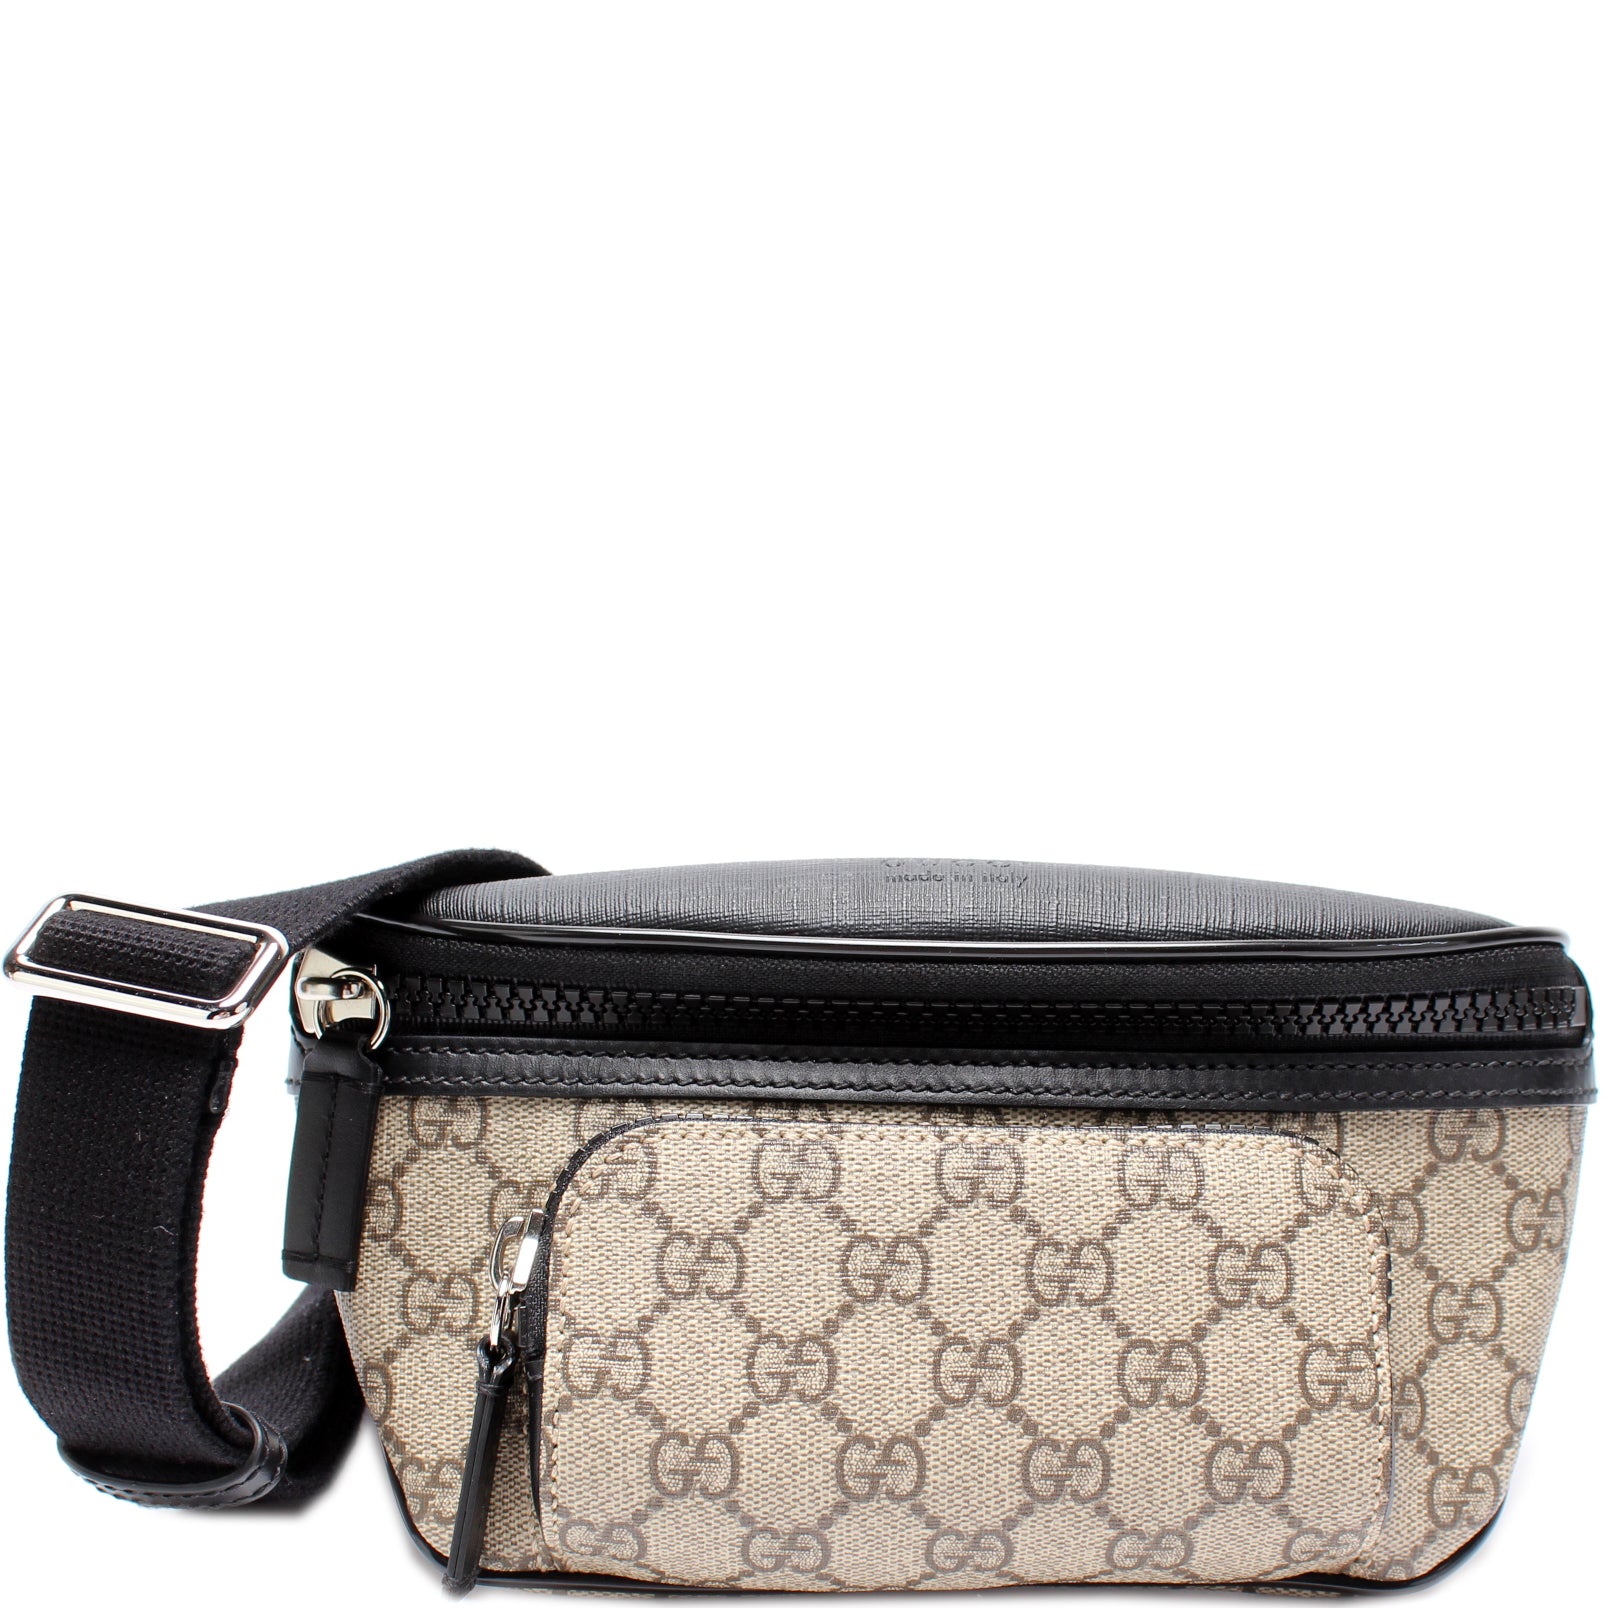 GG Supreme Belt Bag Keeks Designer Handbags